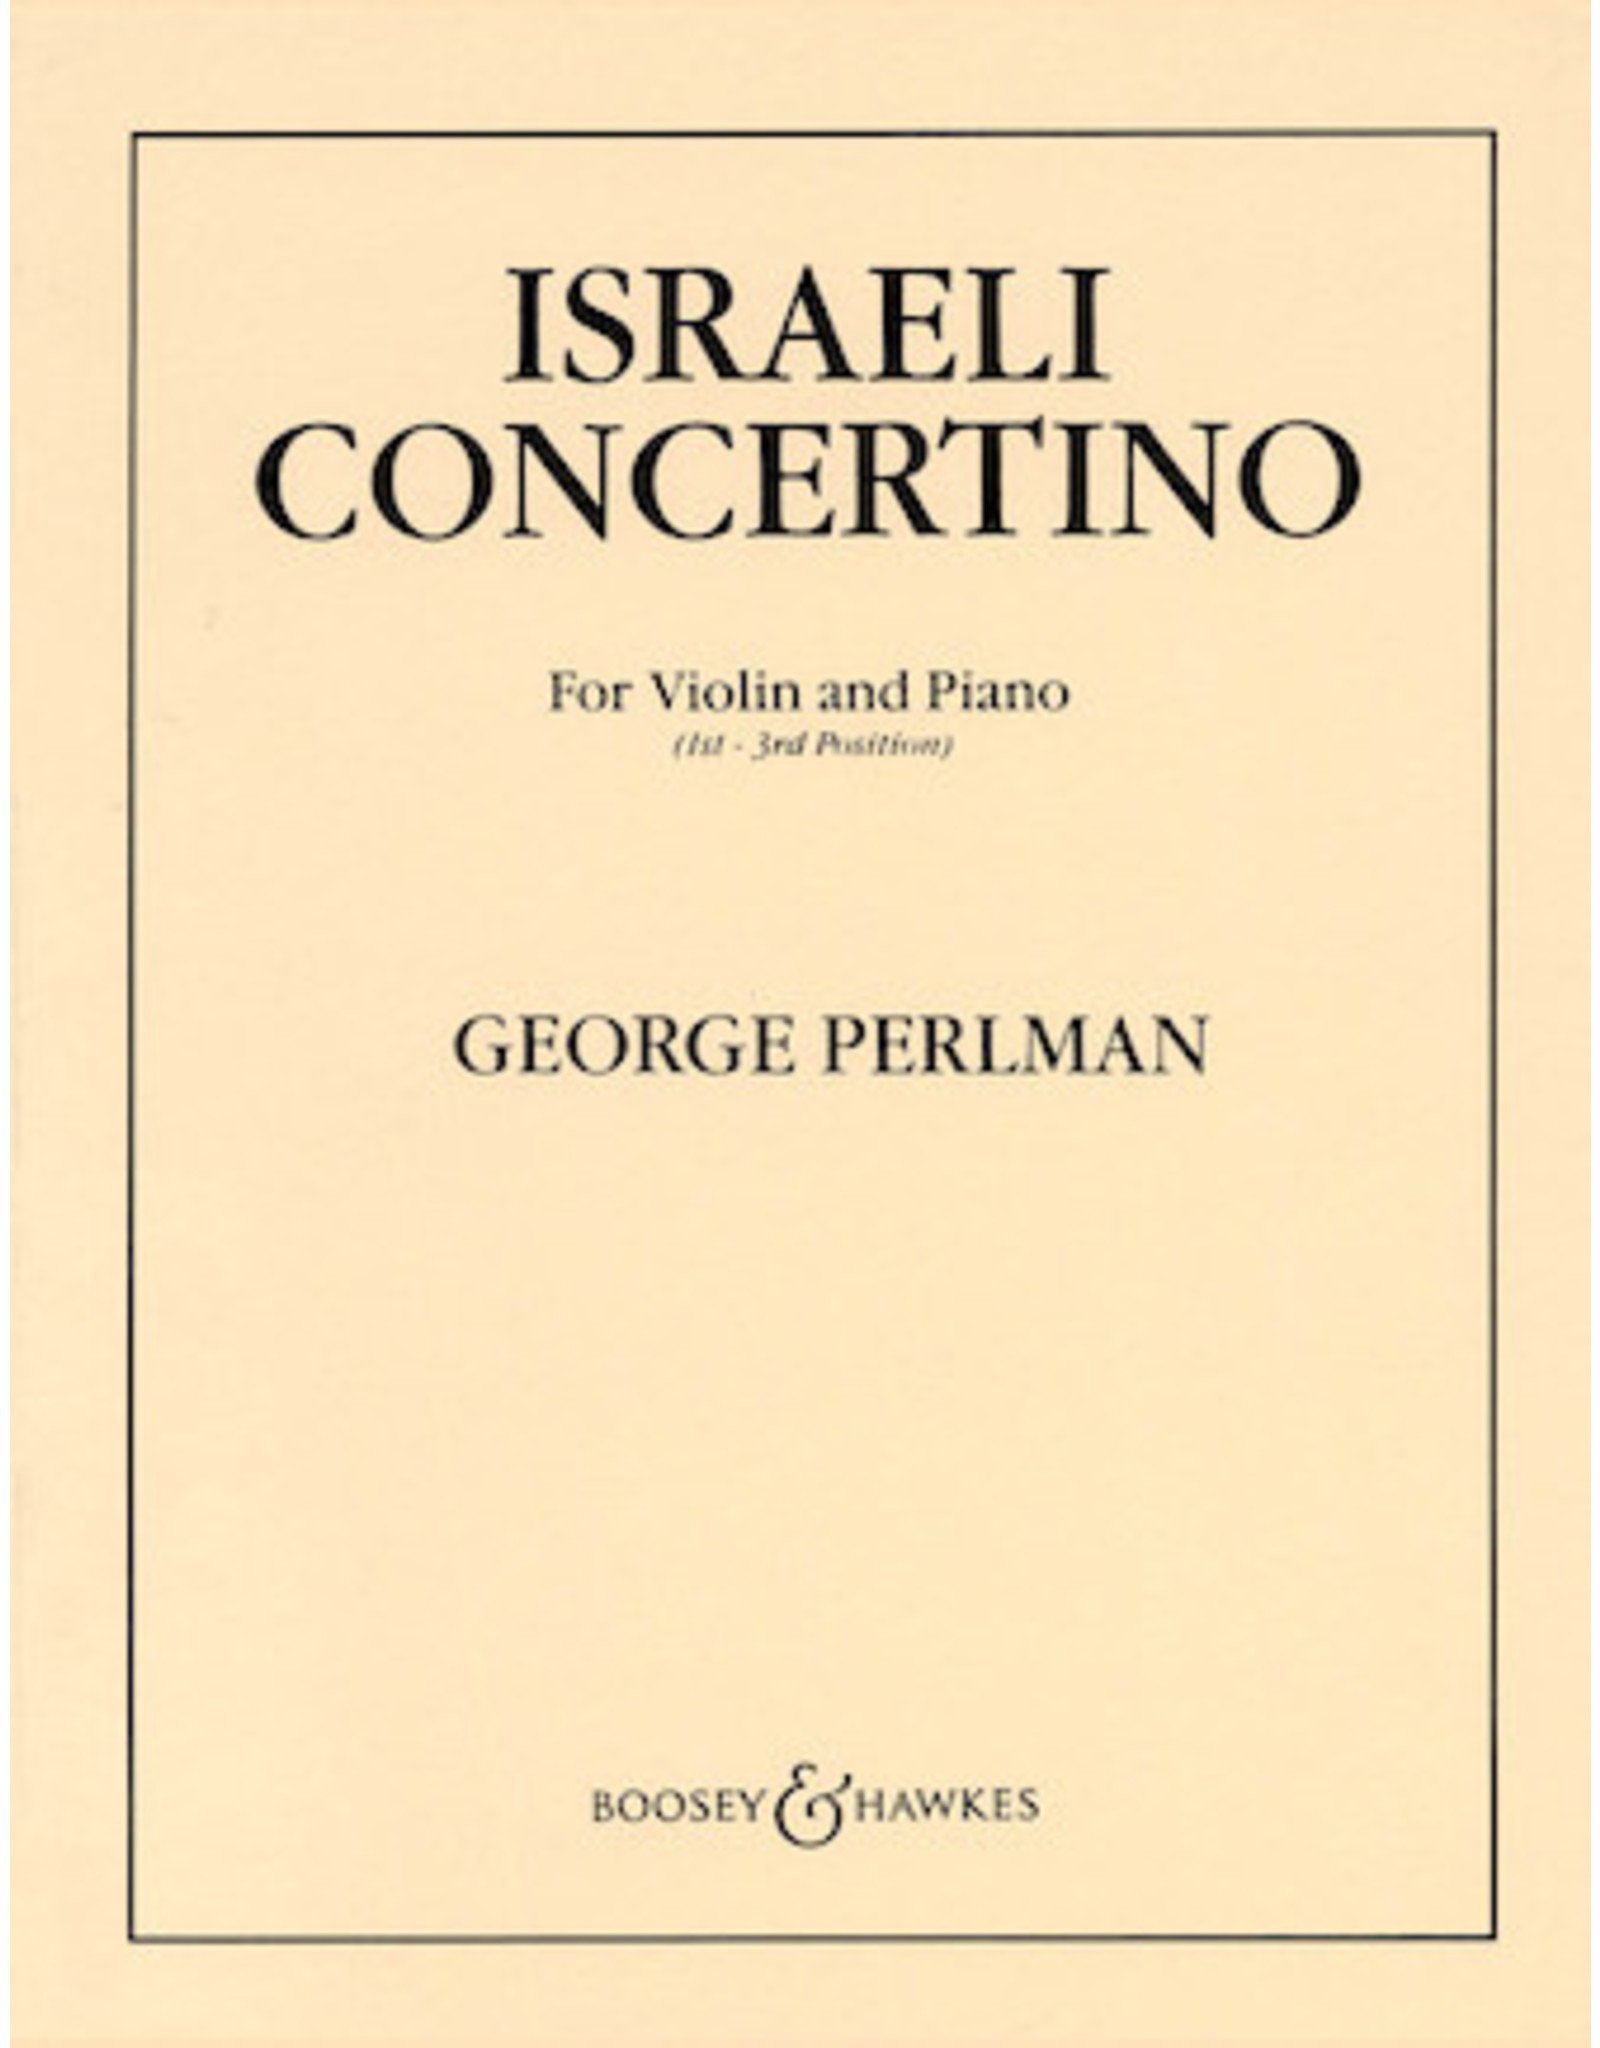 Boosey & Hawkes Perlman - Israeli Concertino - Violin and Piano